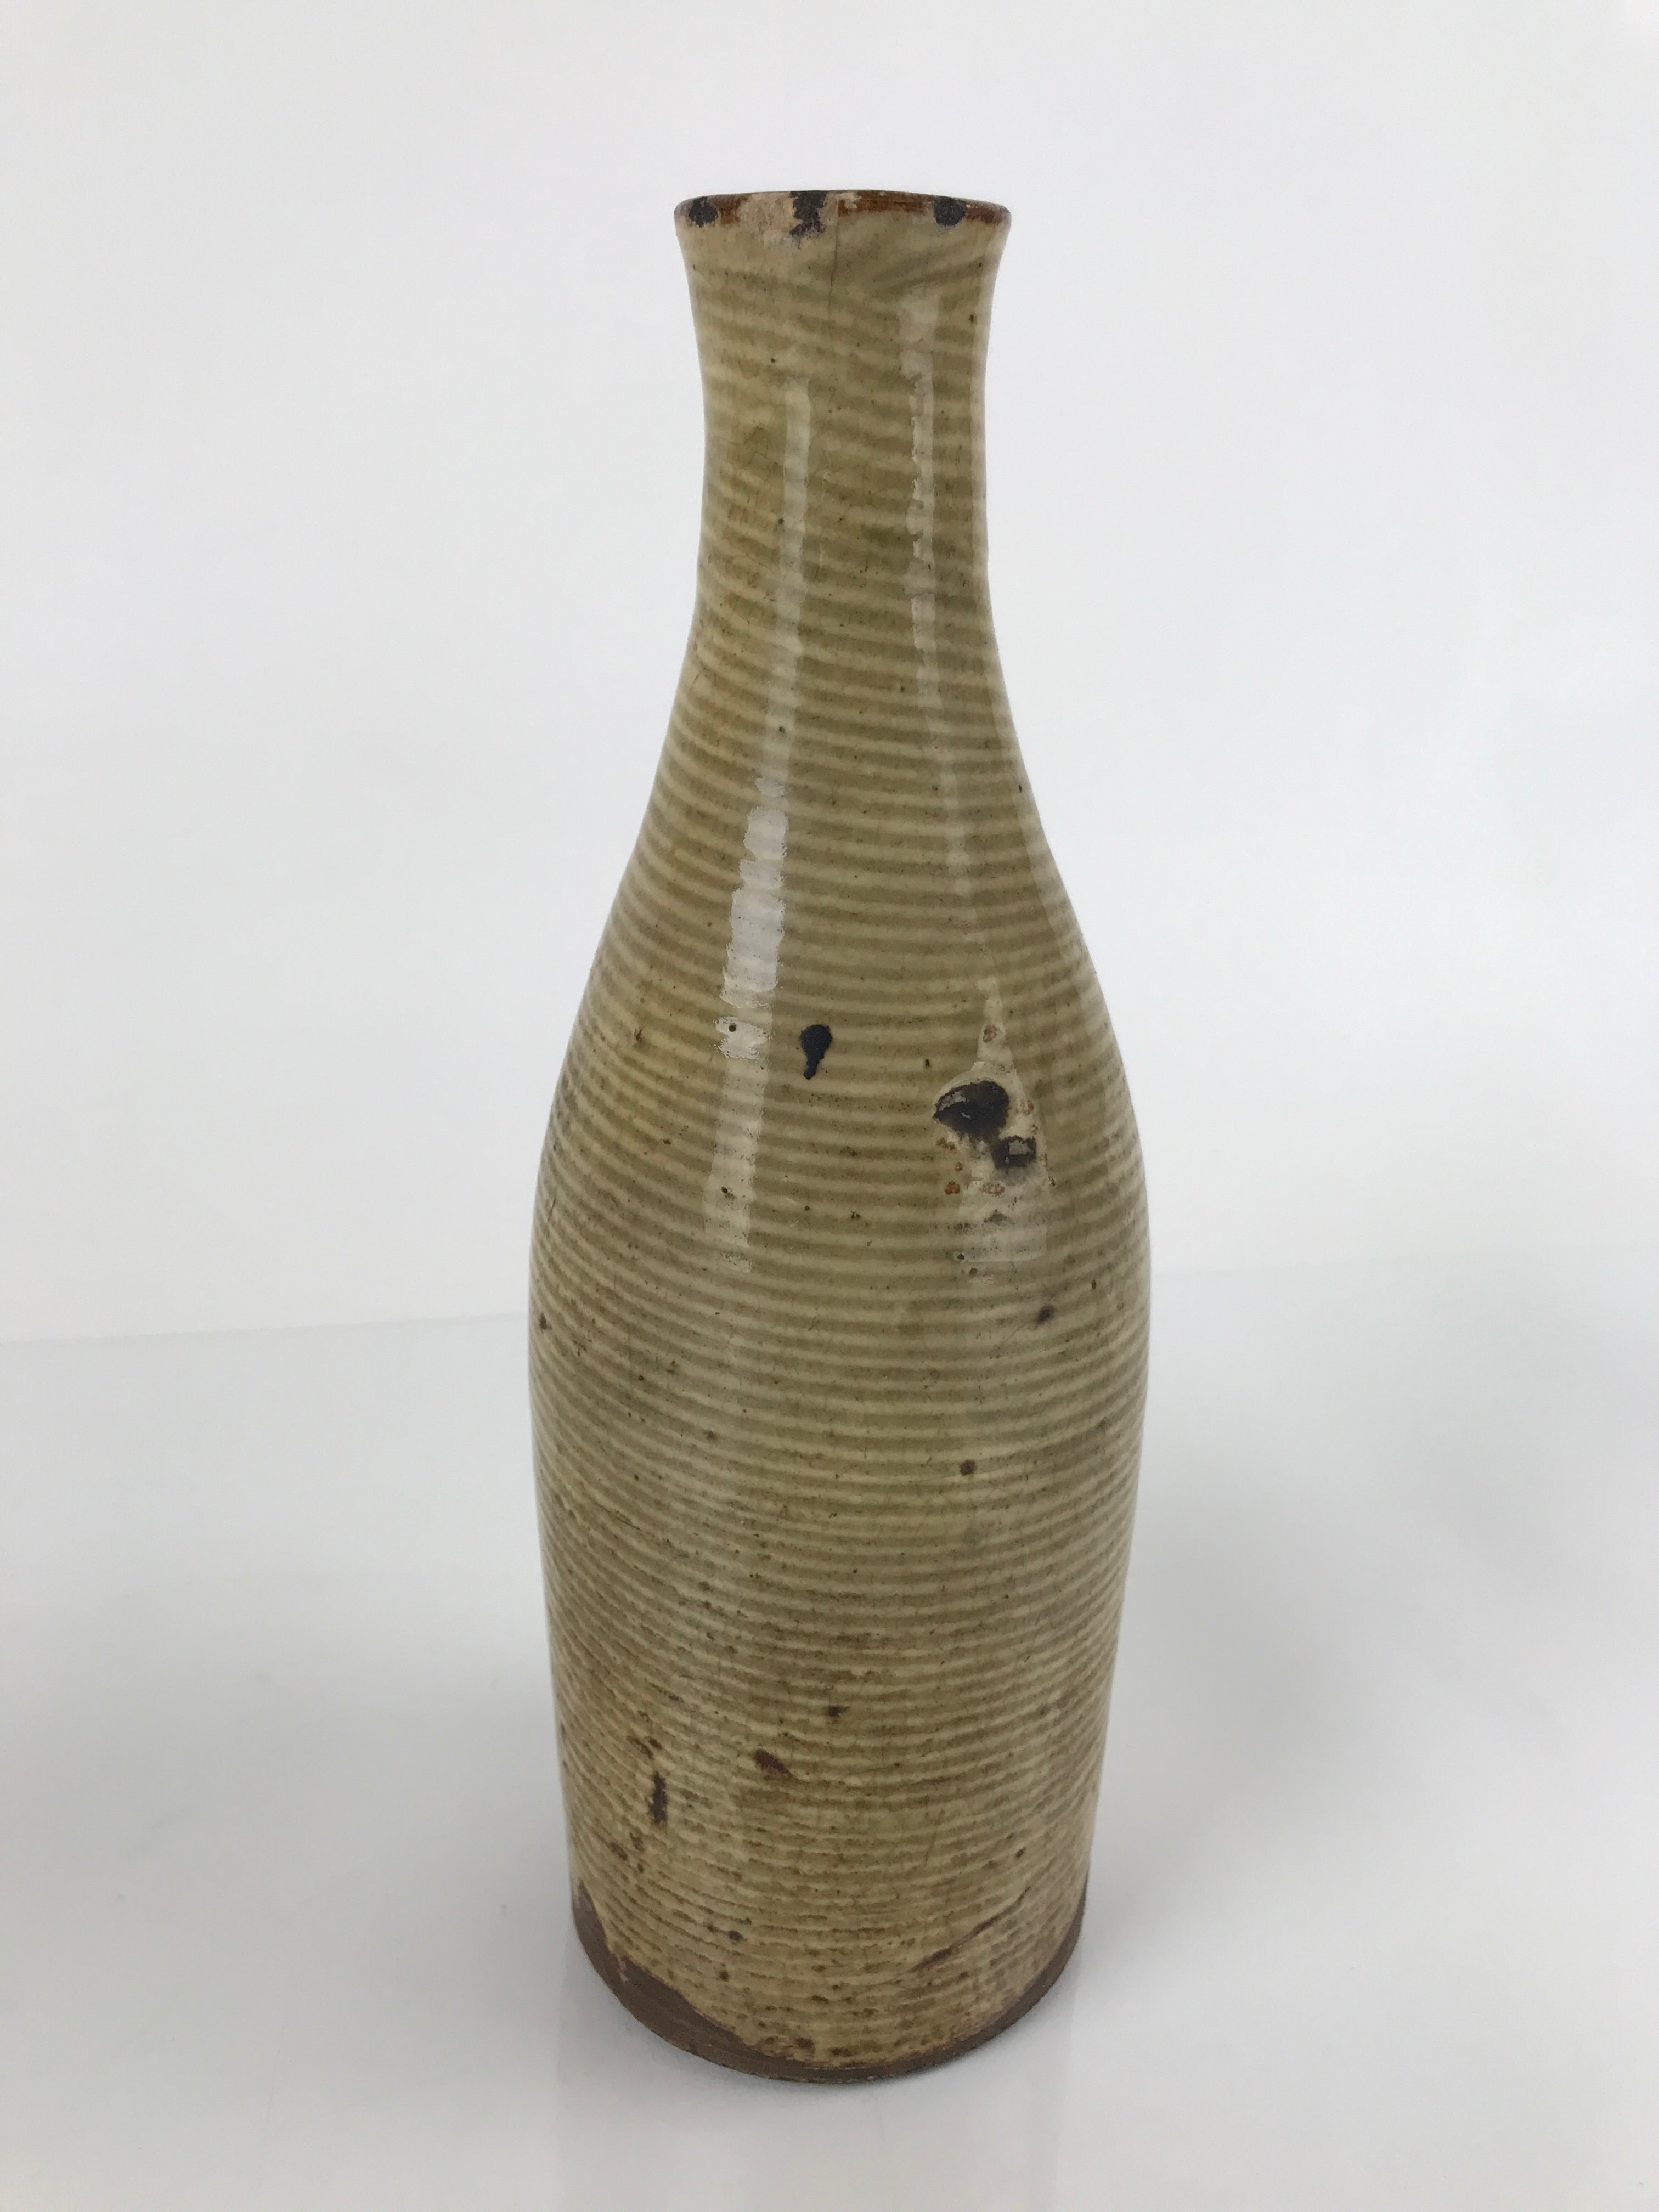 Antique Japanese Ceramic Sake Bottle Tokkuri Large Tall Brown Line Design TS628